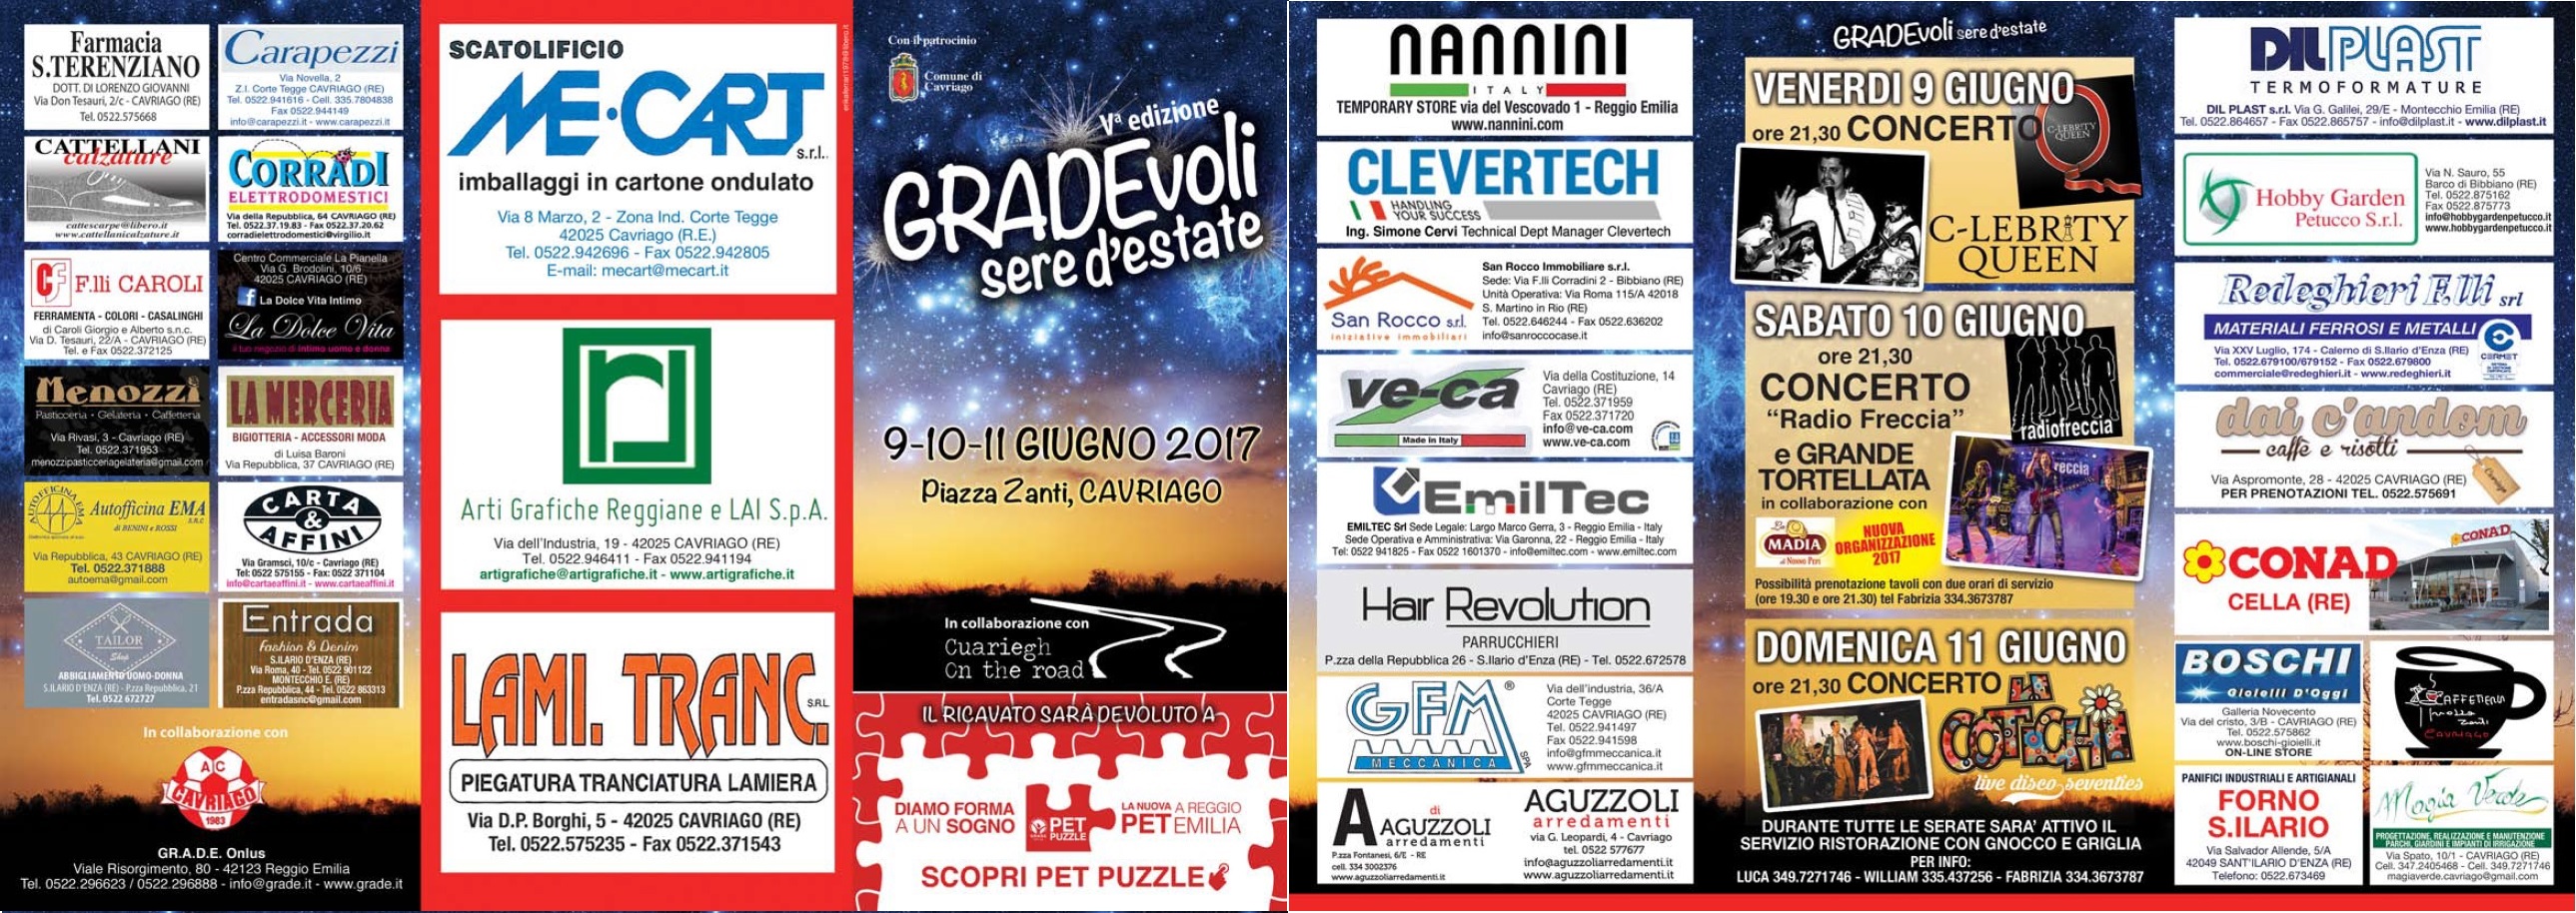 2017-06 grade cavriago sponsor 2